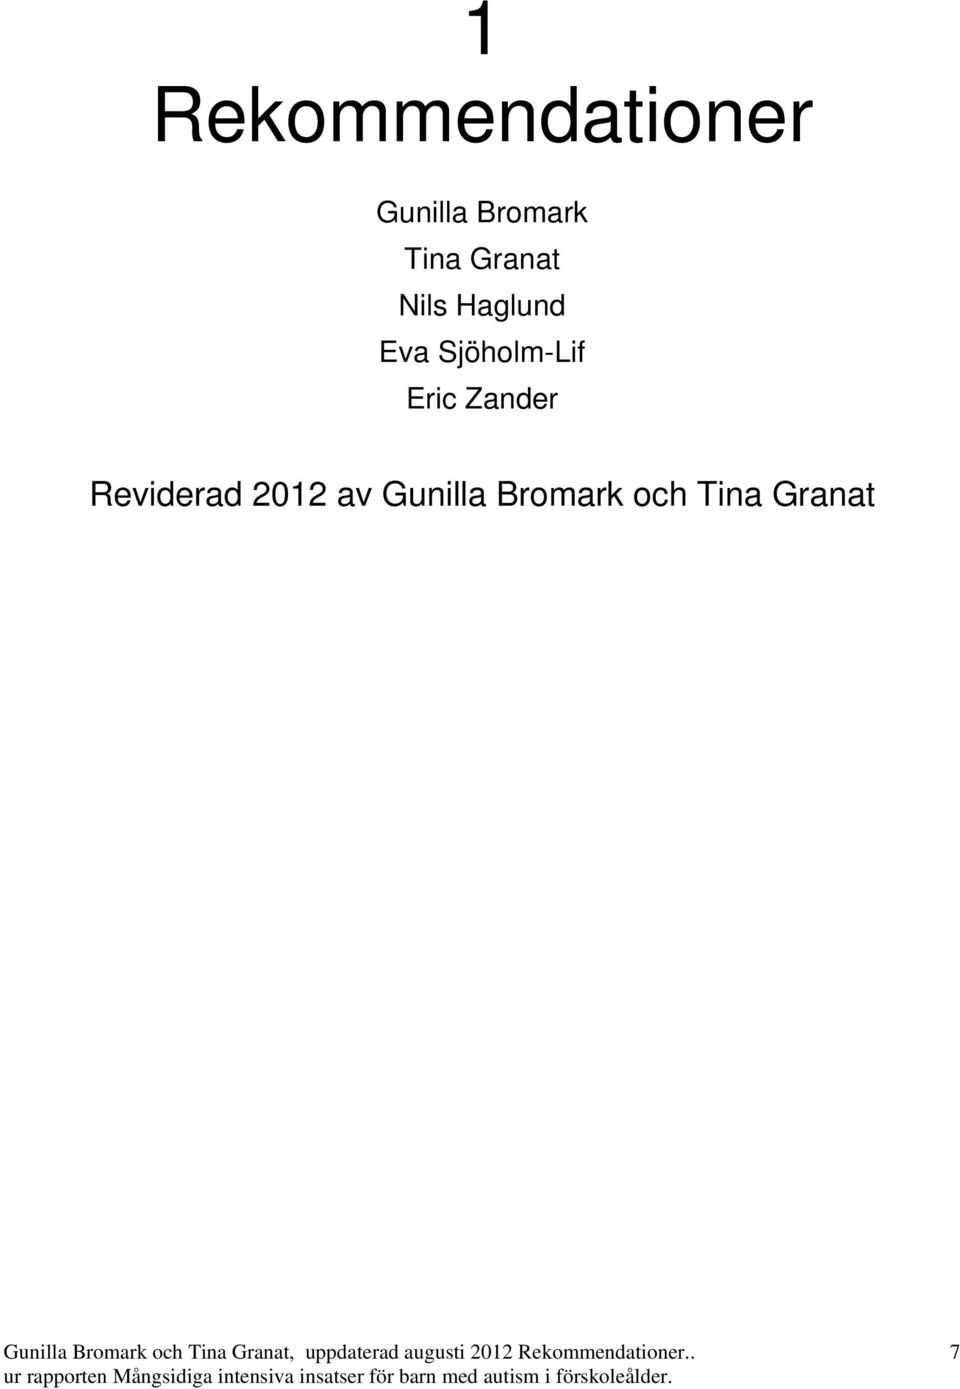 Gunilla Bromark och Tina Granat, uppdaterad augusti 2012 Rekommendationer.